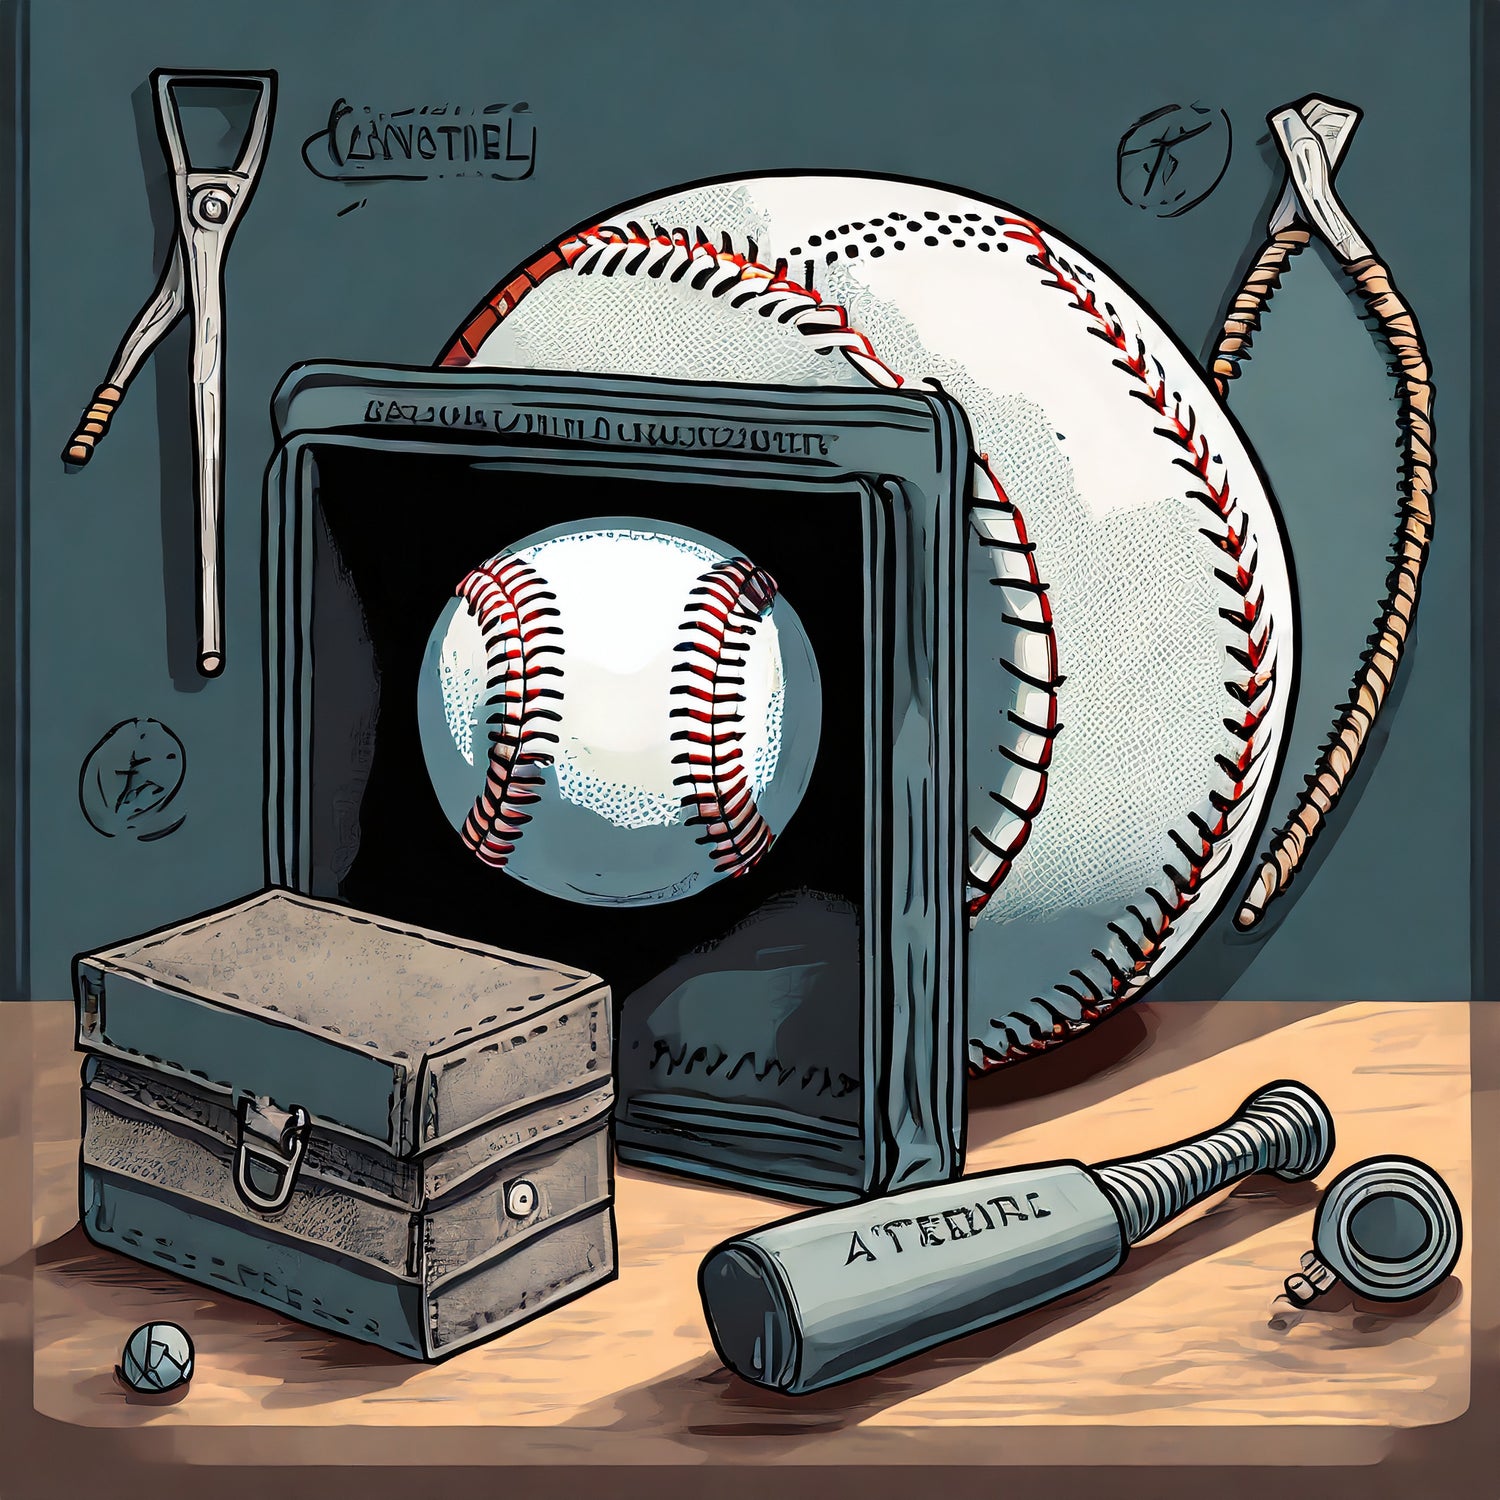 How to Use the Sarna Baseball Maintenance Kit